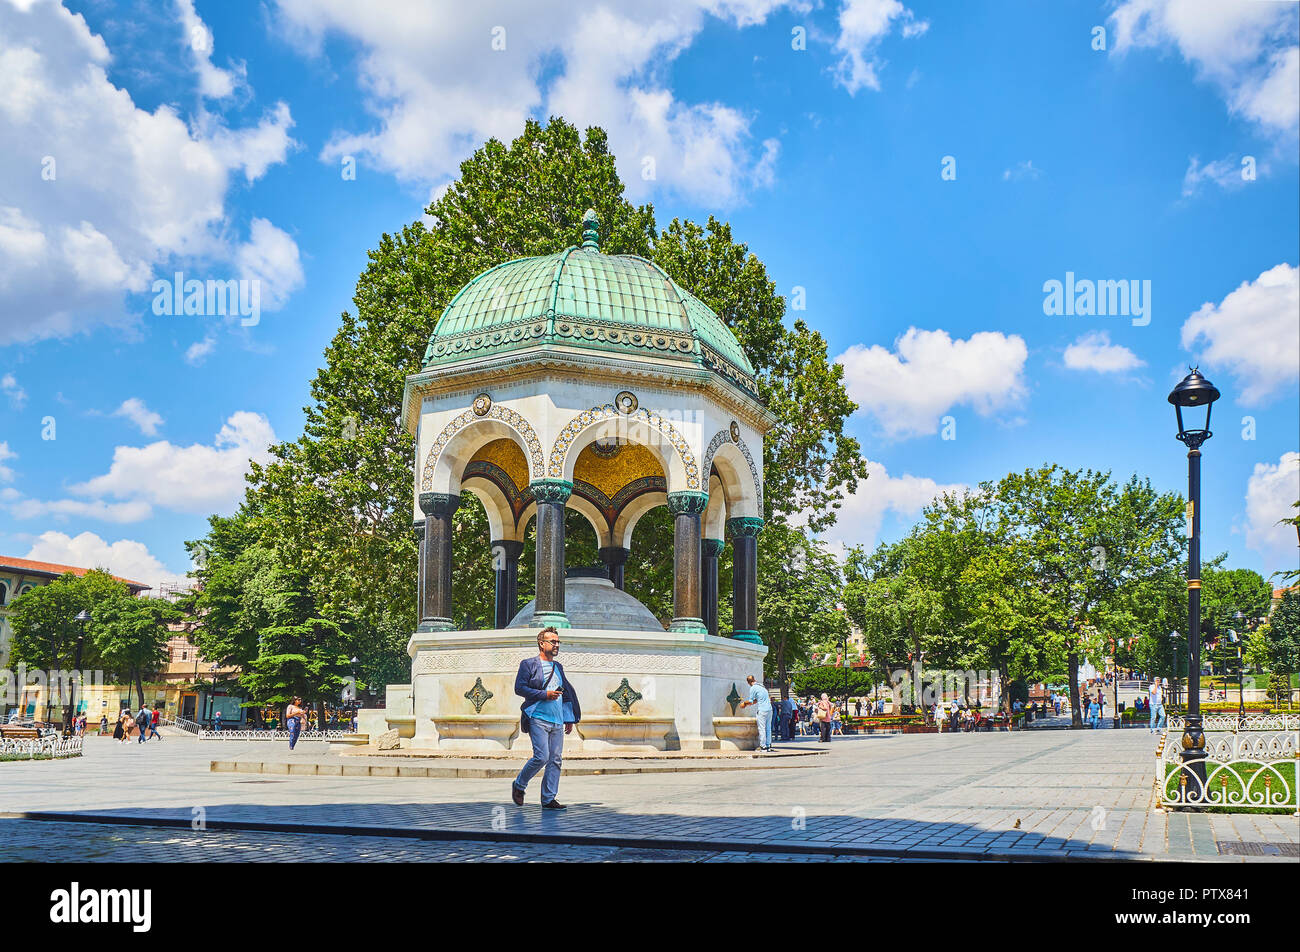 Un cittadino a piedi nella parte anteriore del tedesco della Fontana e il lato nord dell'Ippodromo di Costantinopoli, Sultan Ahmet Square. Istanbul, Turchia. Foto Stock